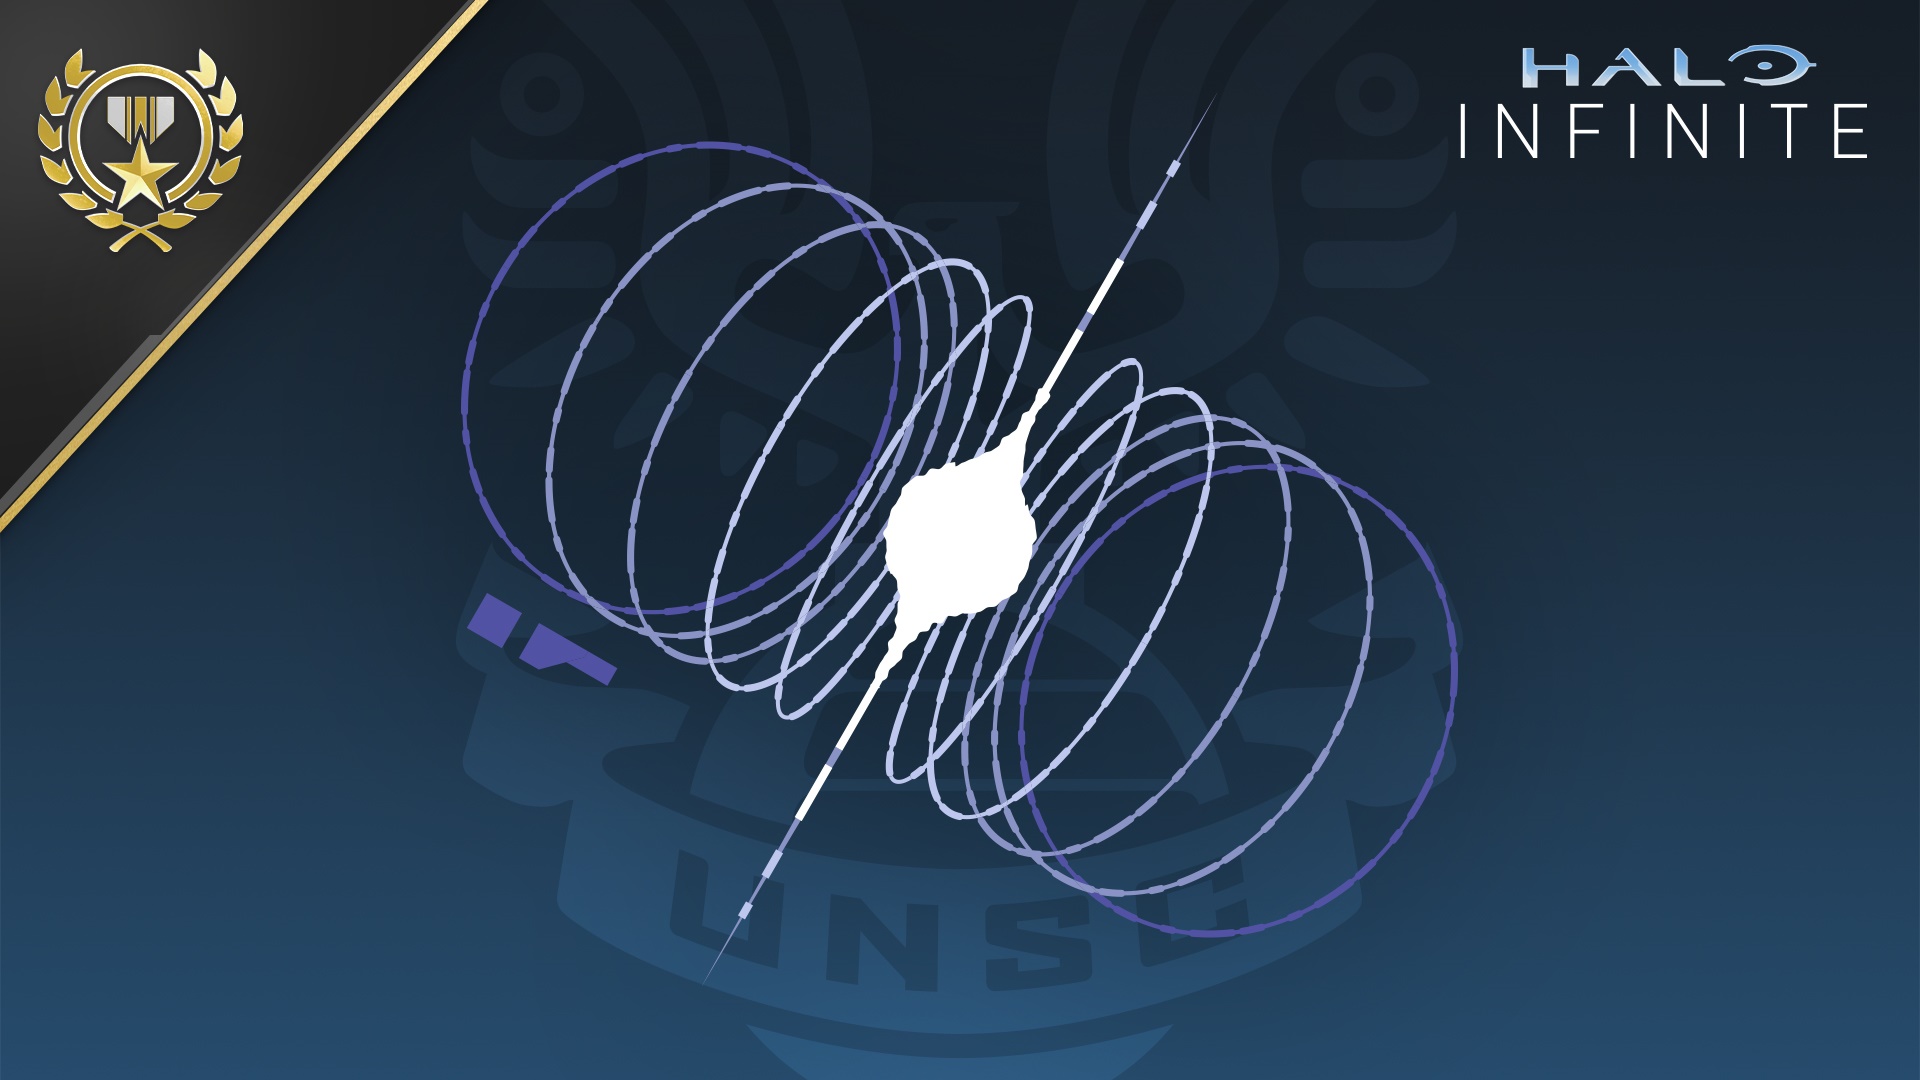 Image de halo infini du logo de la source de signal